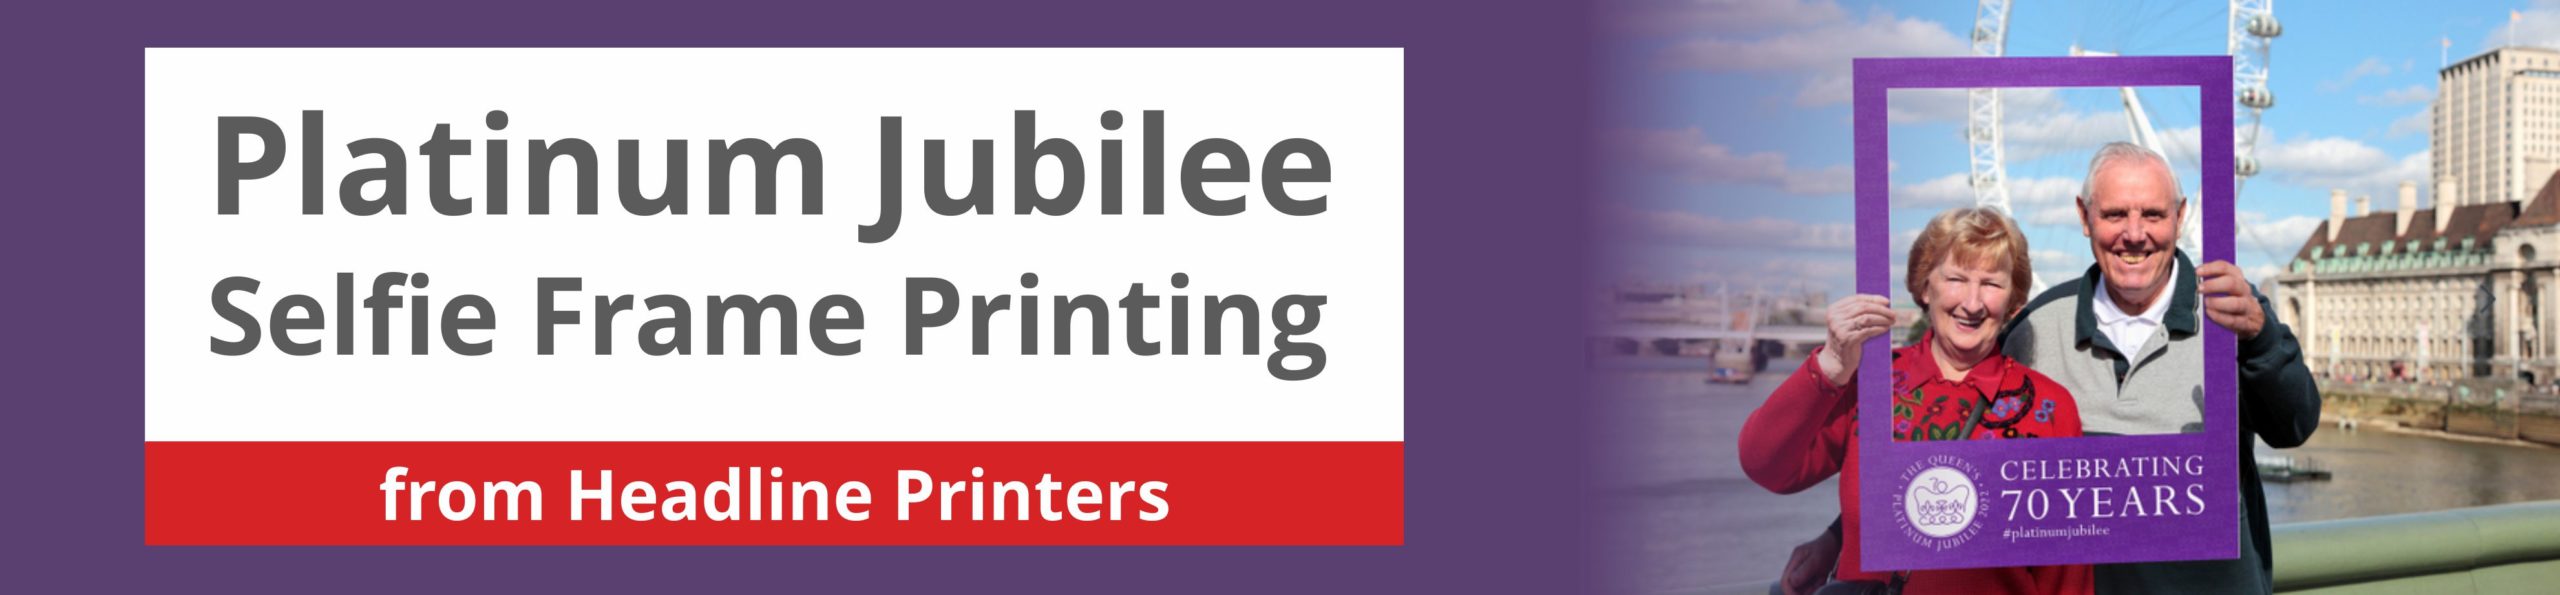 Platinum Jubilee Selfie Frame Printing